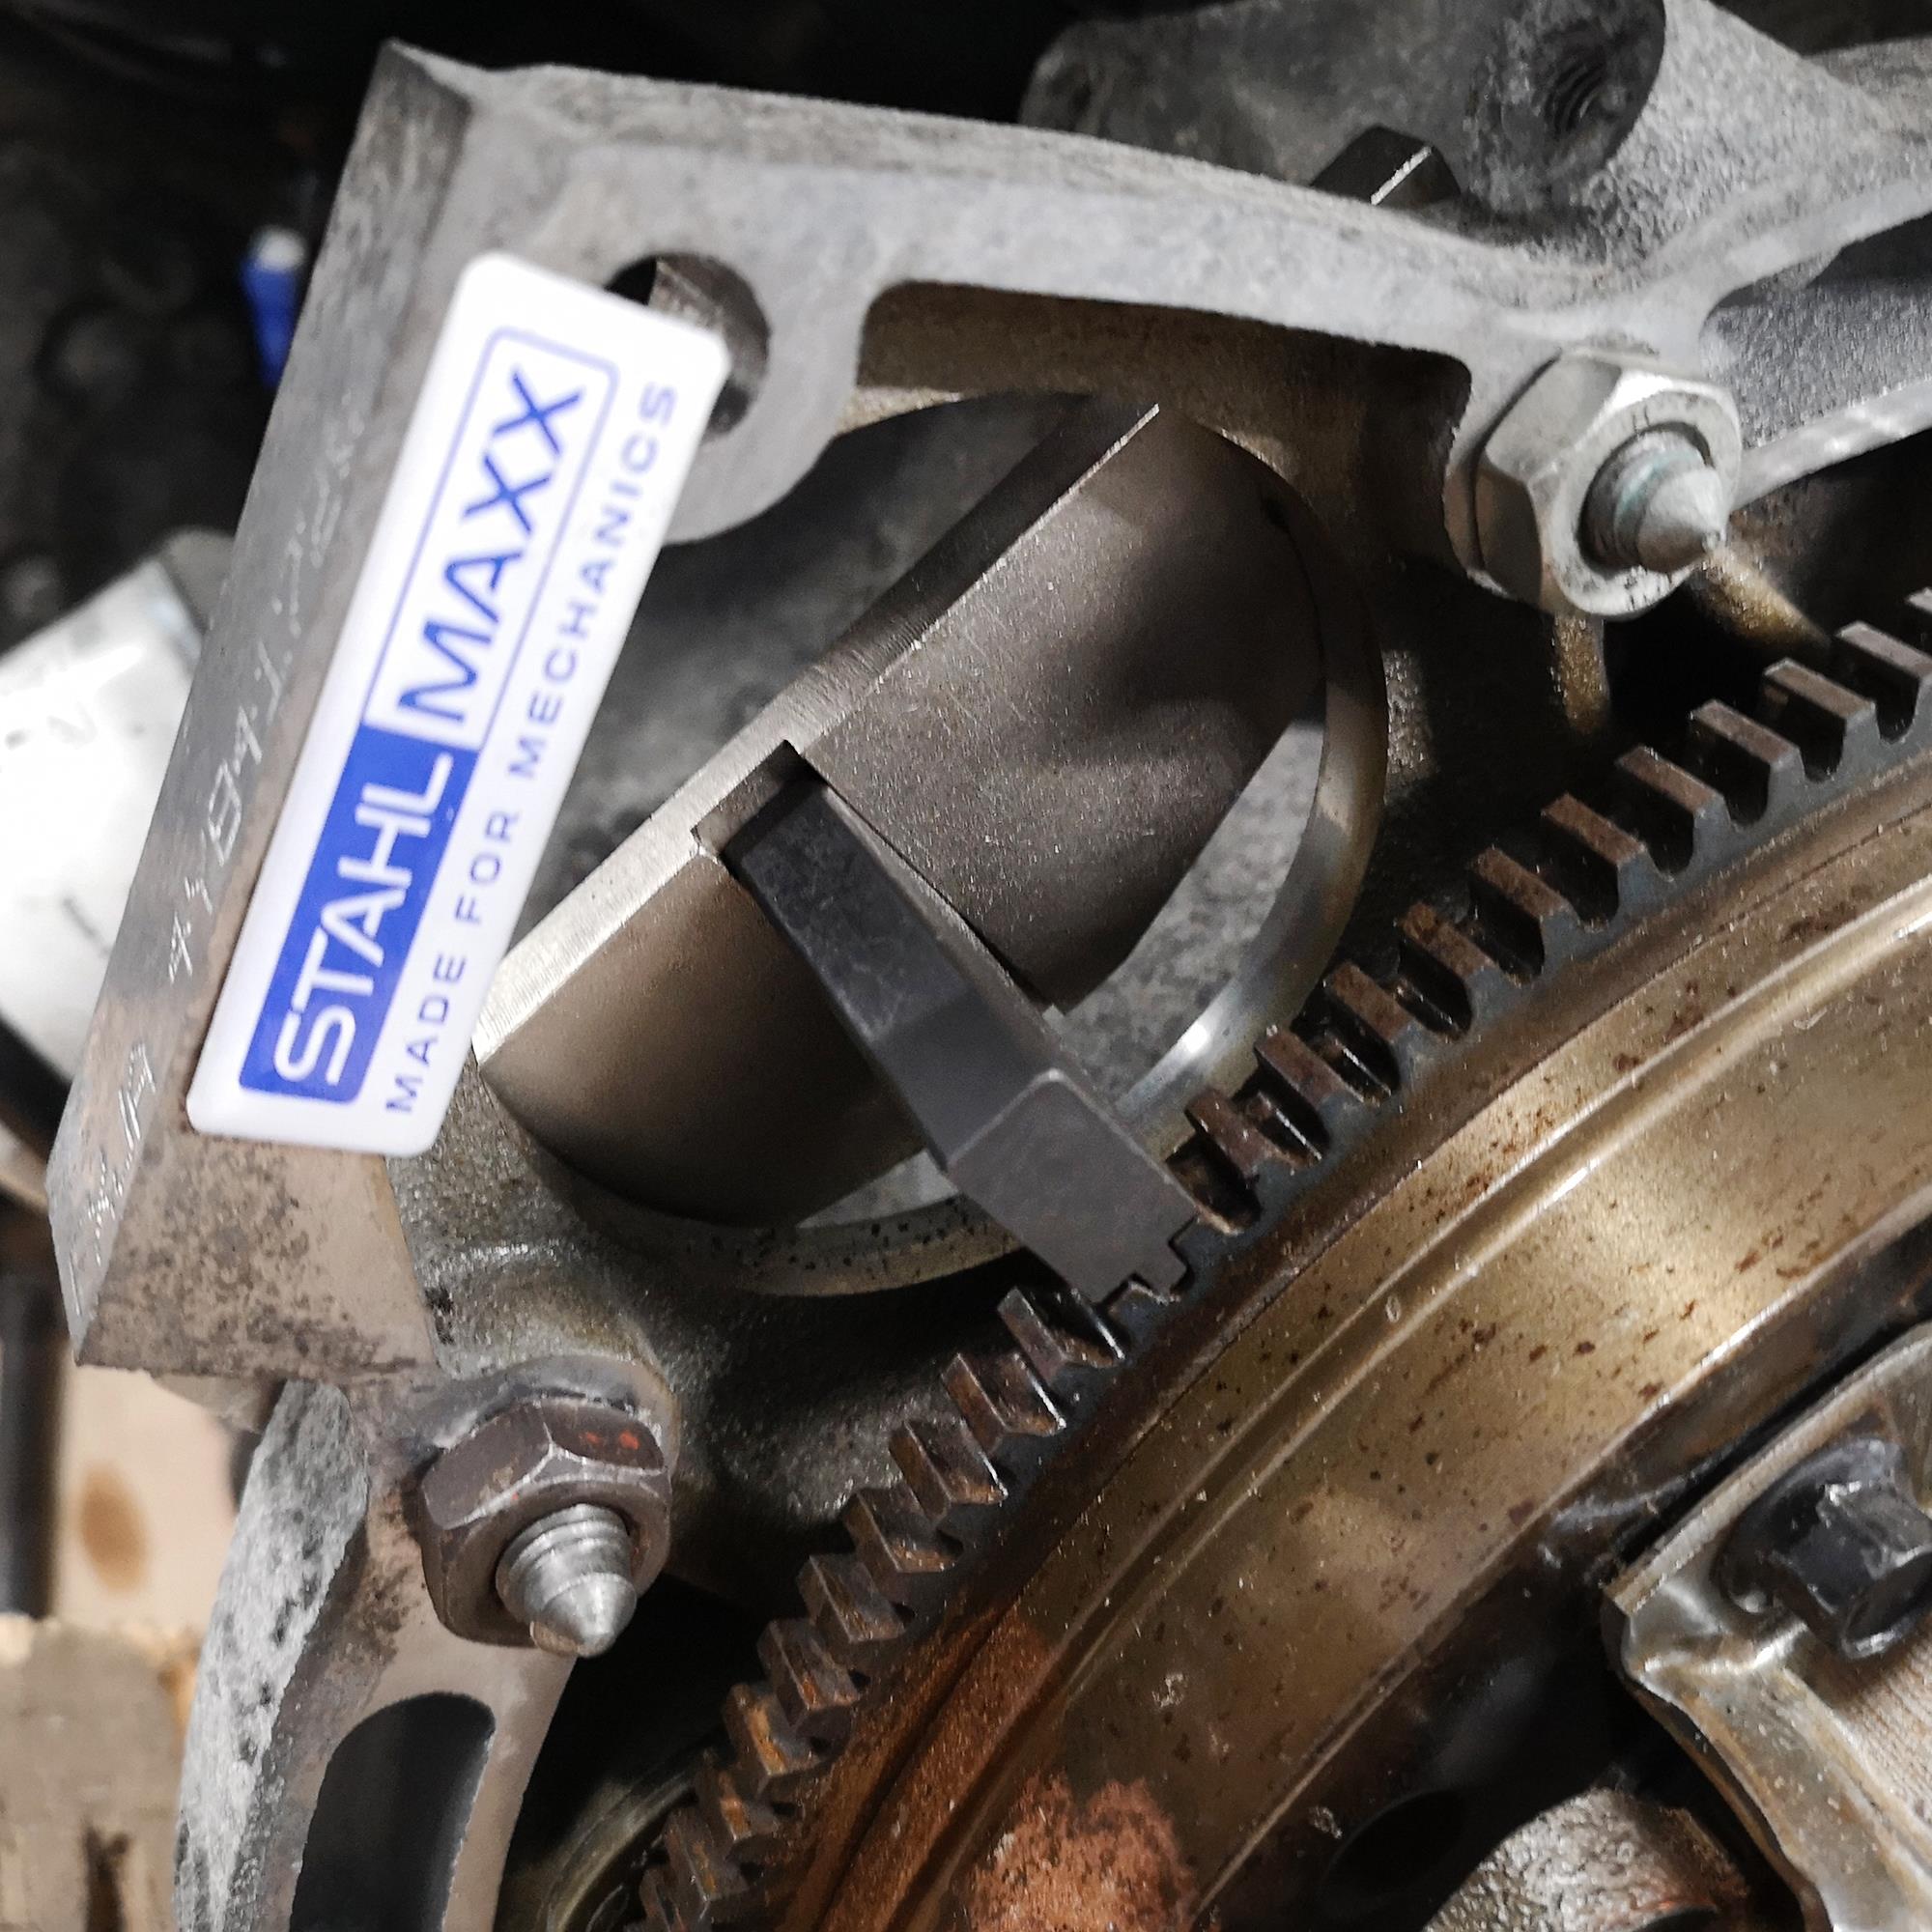 DAYUAN Motor Einstell Werkzeug Zahnriemen Arretierung Schwungrad Sperren  Werkzeug für Focus Fiesta Mondeo, Kompatibel mit Ford Mazda1.4 1.6 1.8 2.0